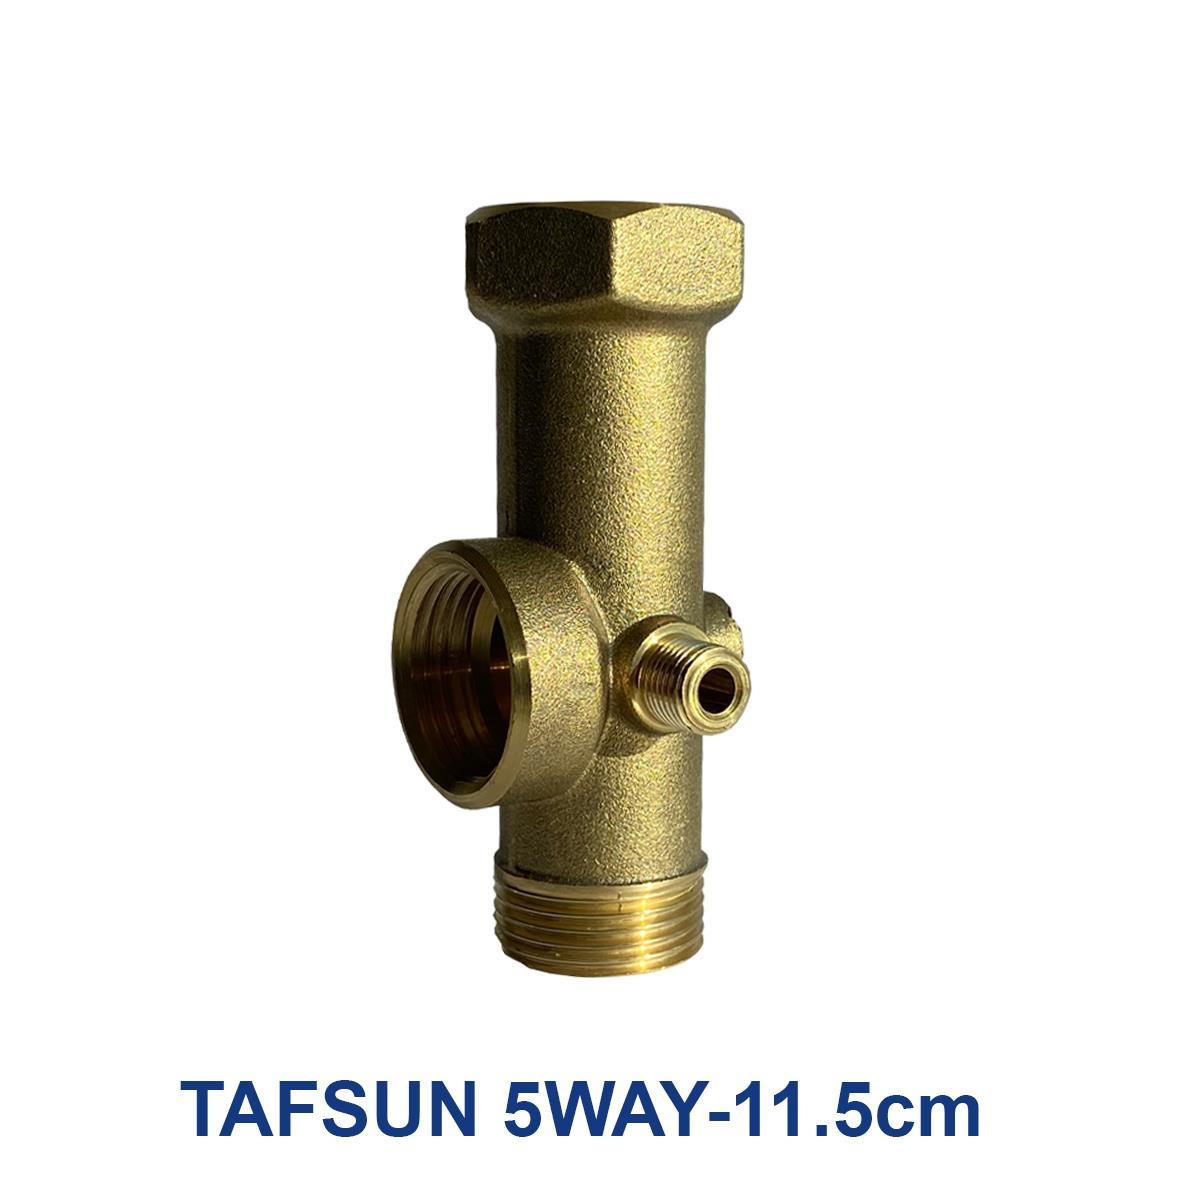 Tafsun-5WAY-11.5cm